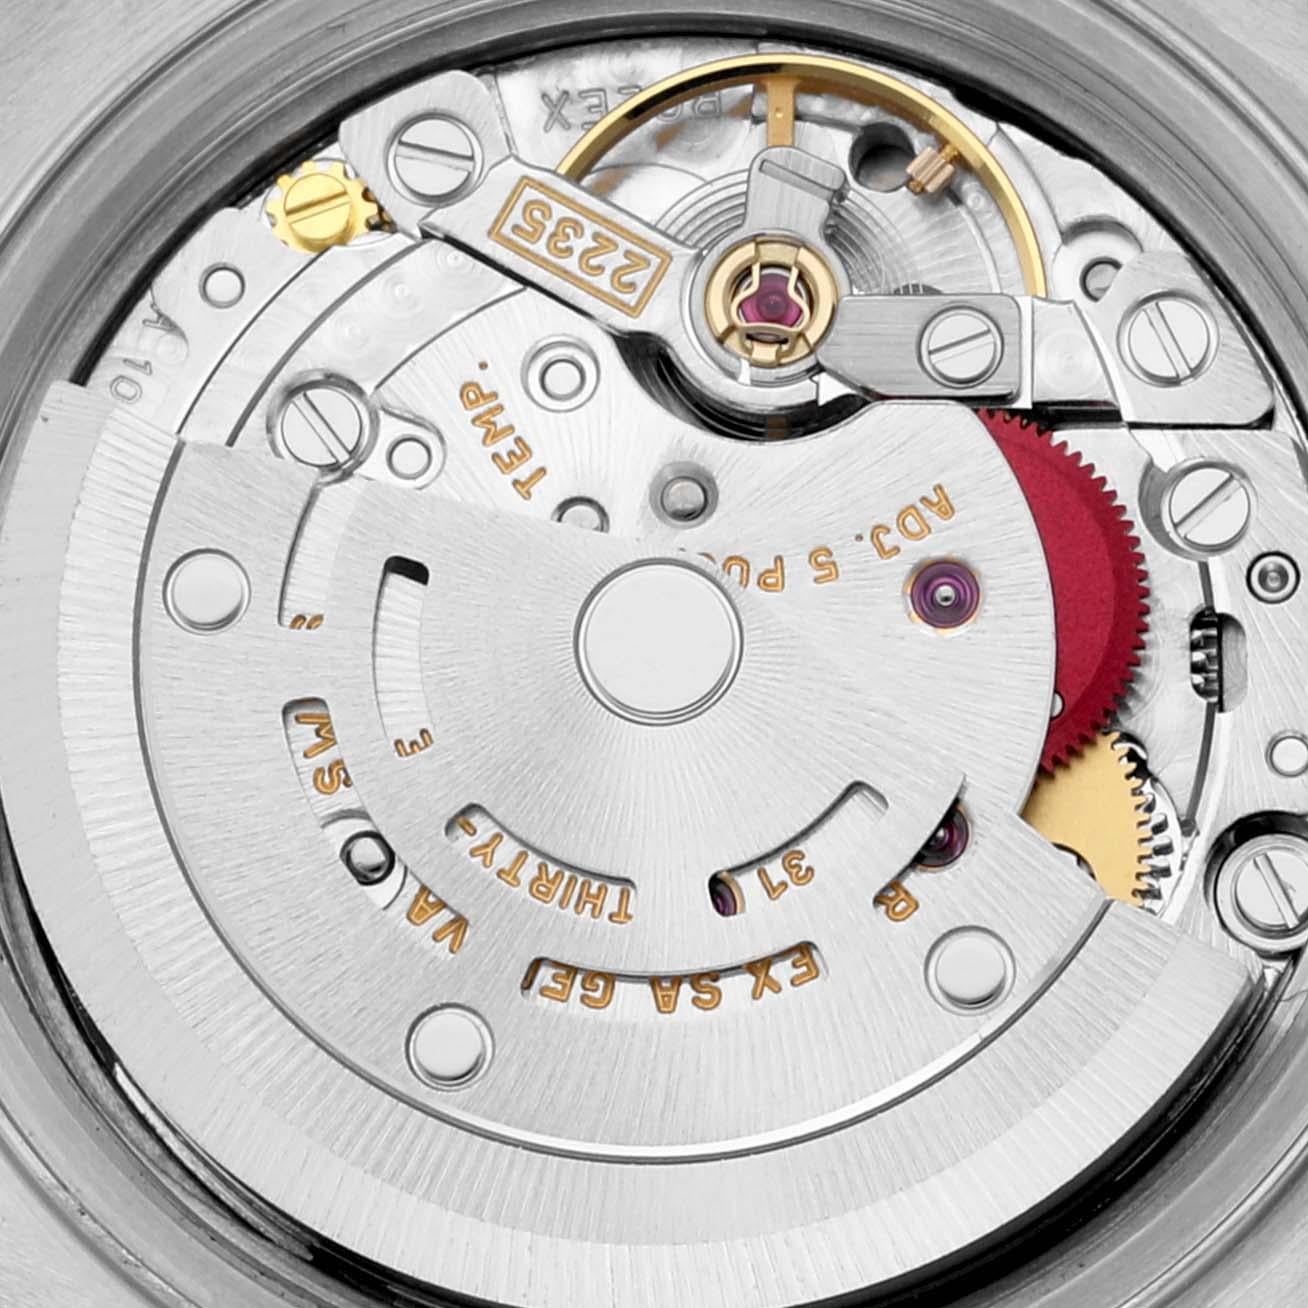 Montre Rolex Datejust en acier, or jaune, champagne et cadran diamanté 79173. Mouvement automatique à remontage automatique, officiellement certifié chronomètre. Boîtier oyster en acier inoxydable de 26.0 mm de diamètre. Logo Rolex sur une couronne